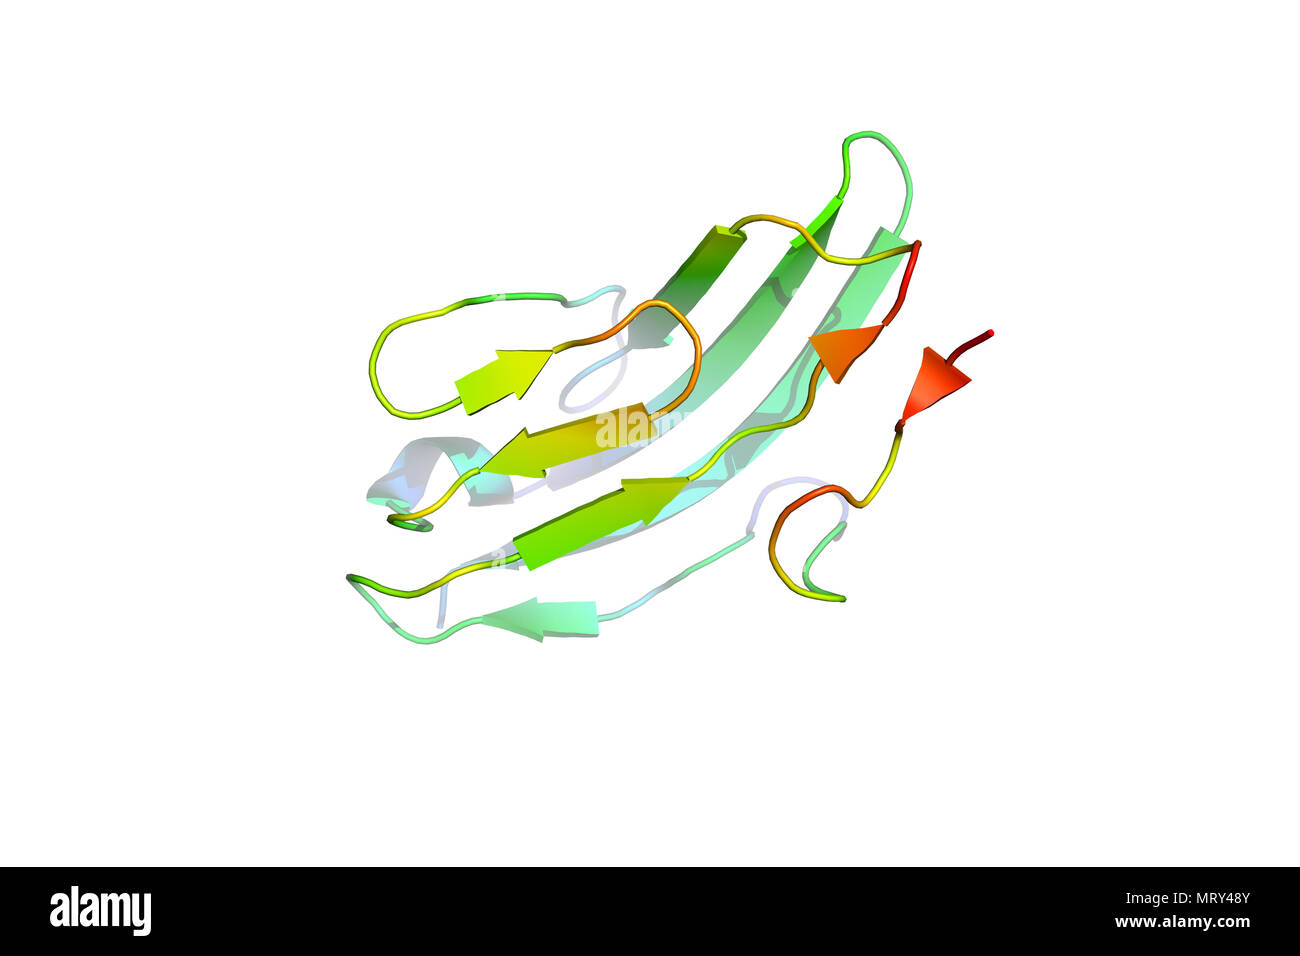 La struttura cristallina del marcatore tumorale di proteina. Il modello 3D della macromolecola biologica. Foto Stock